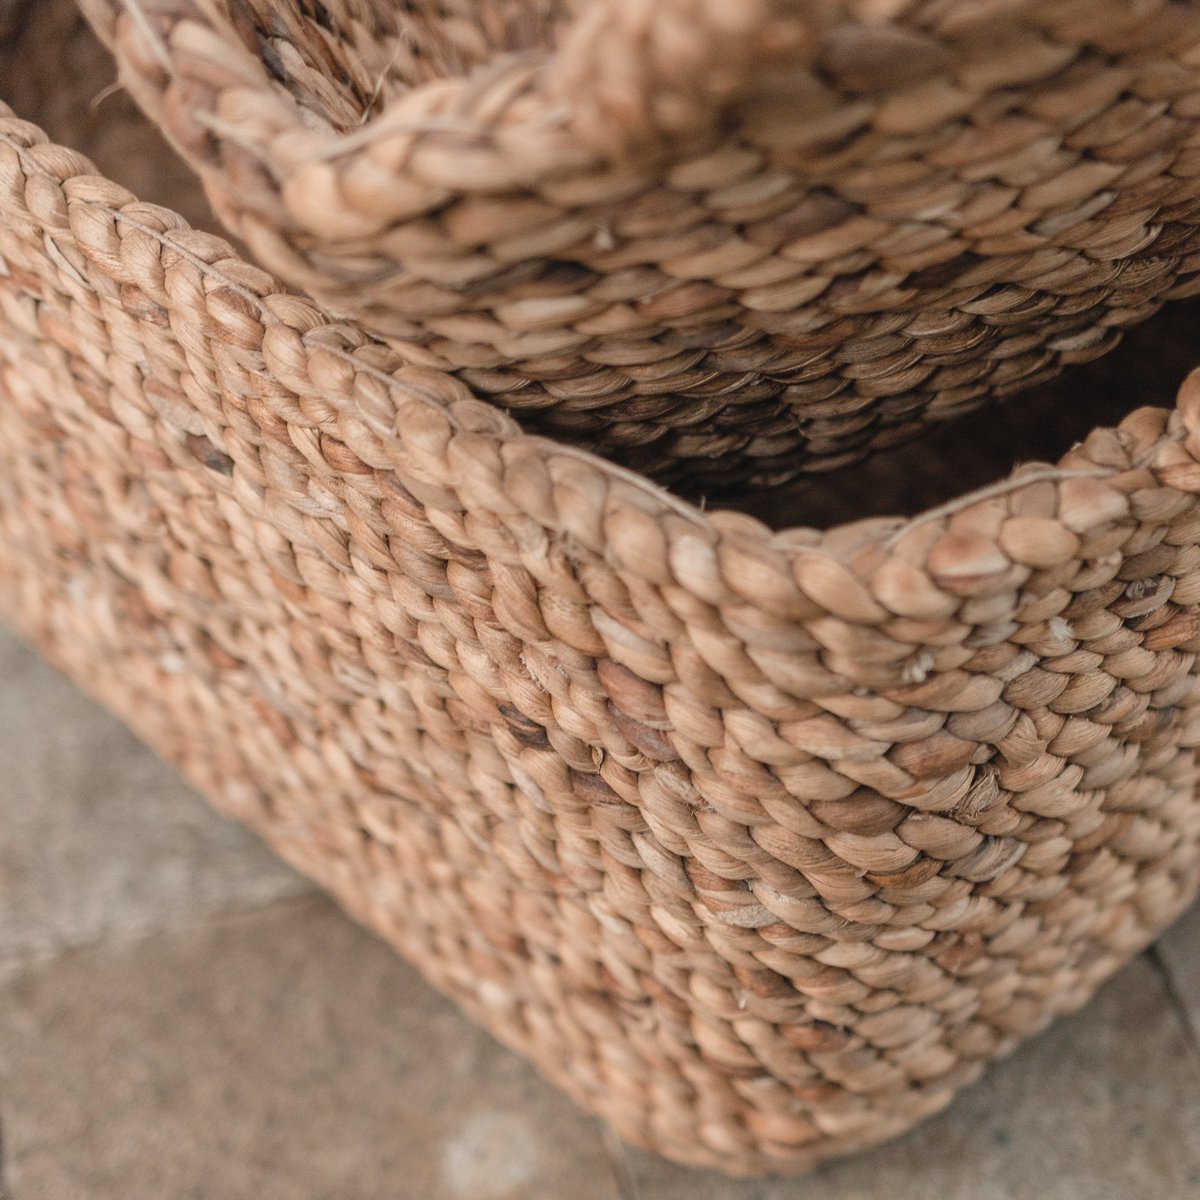 TANIMBAR storage basket made of water hyacinth